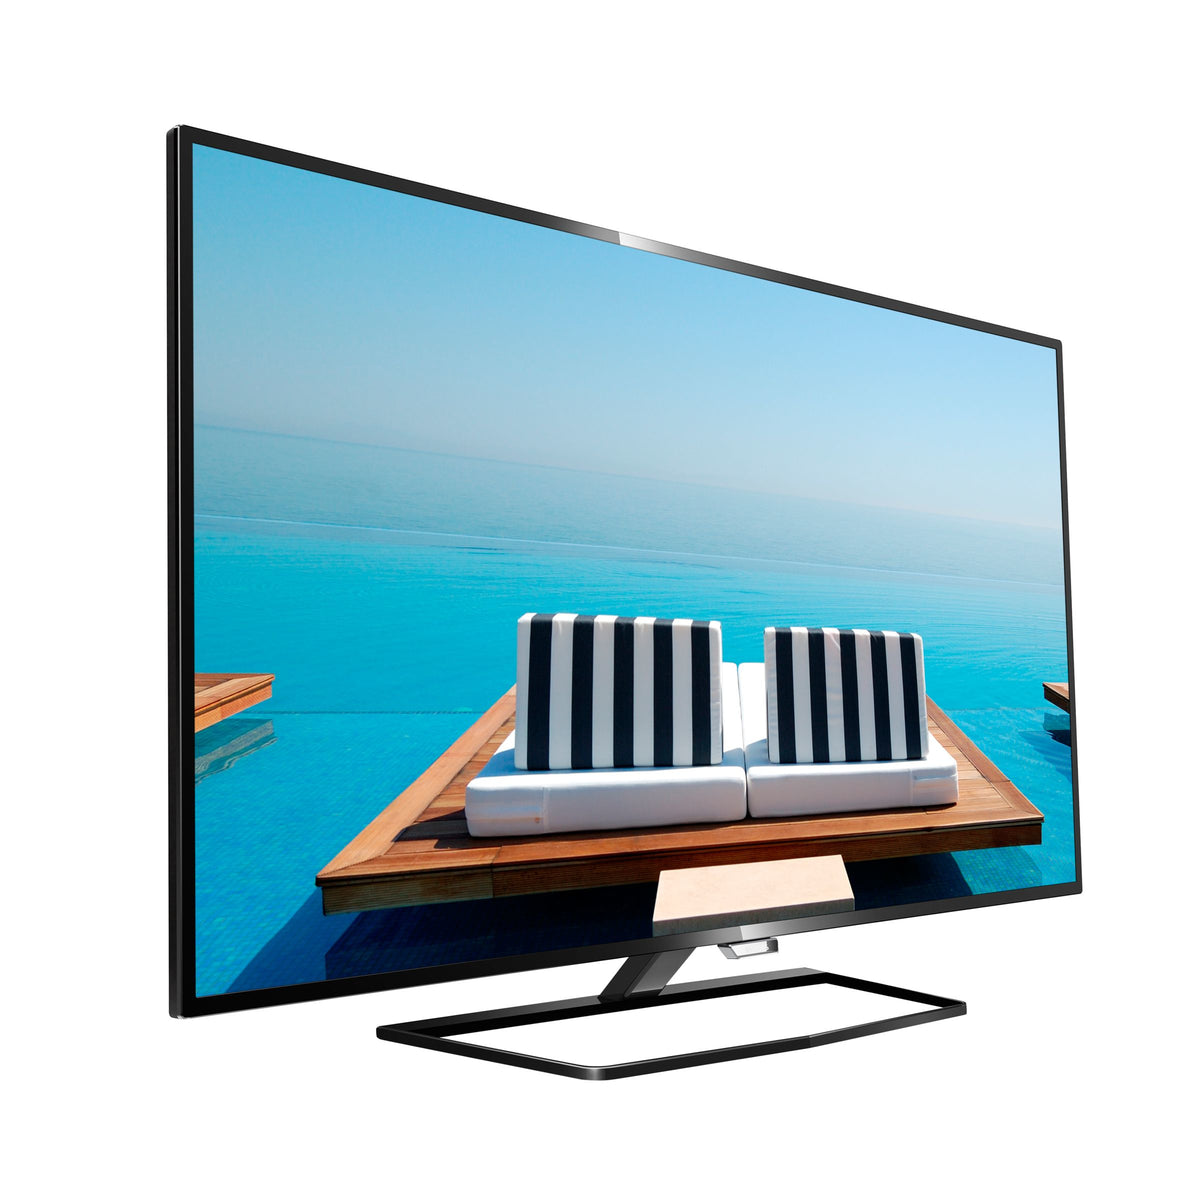 Philips 48HFL5010T - Televisor LCD profesional MediaSuite de clase diagonal de 48" con retroiluminación LED - Hotel / Hostelería - Smart TV - 1080p 1920 x 1080 - Negro